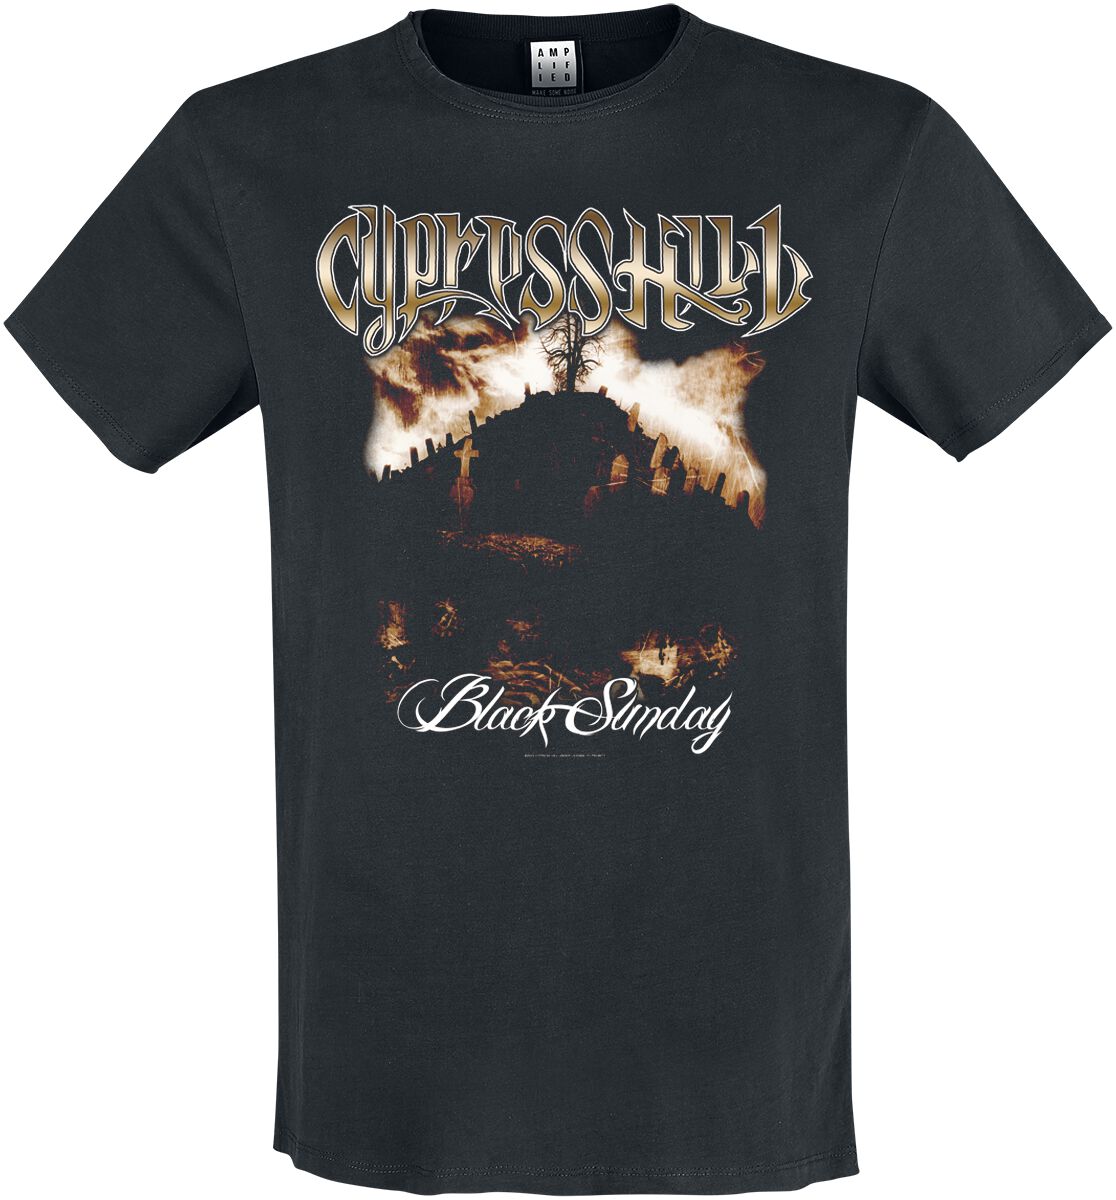 Cypress Hill T-Shirt - Amplified Collection - Black Sunday - S bis XXL - für Männer - Größe S - schwarz  - Lizenziertes Merchandise!